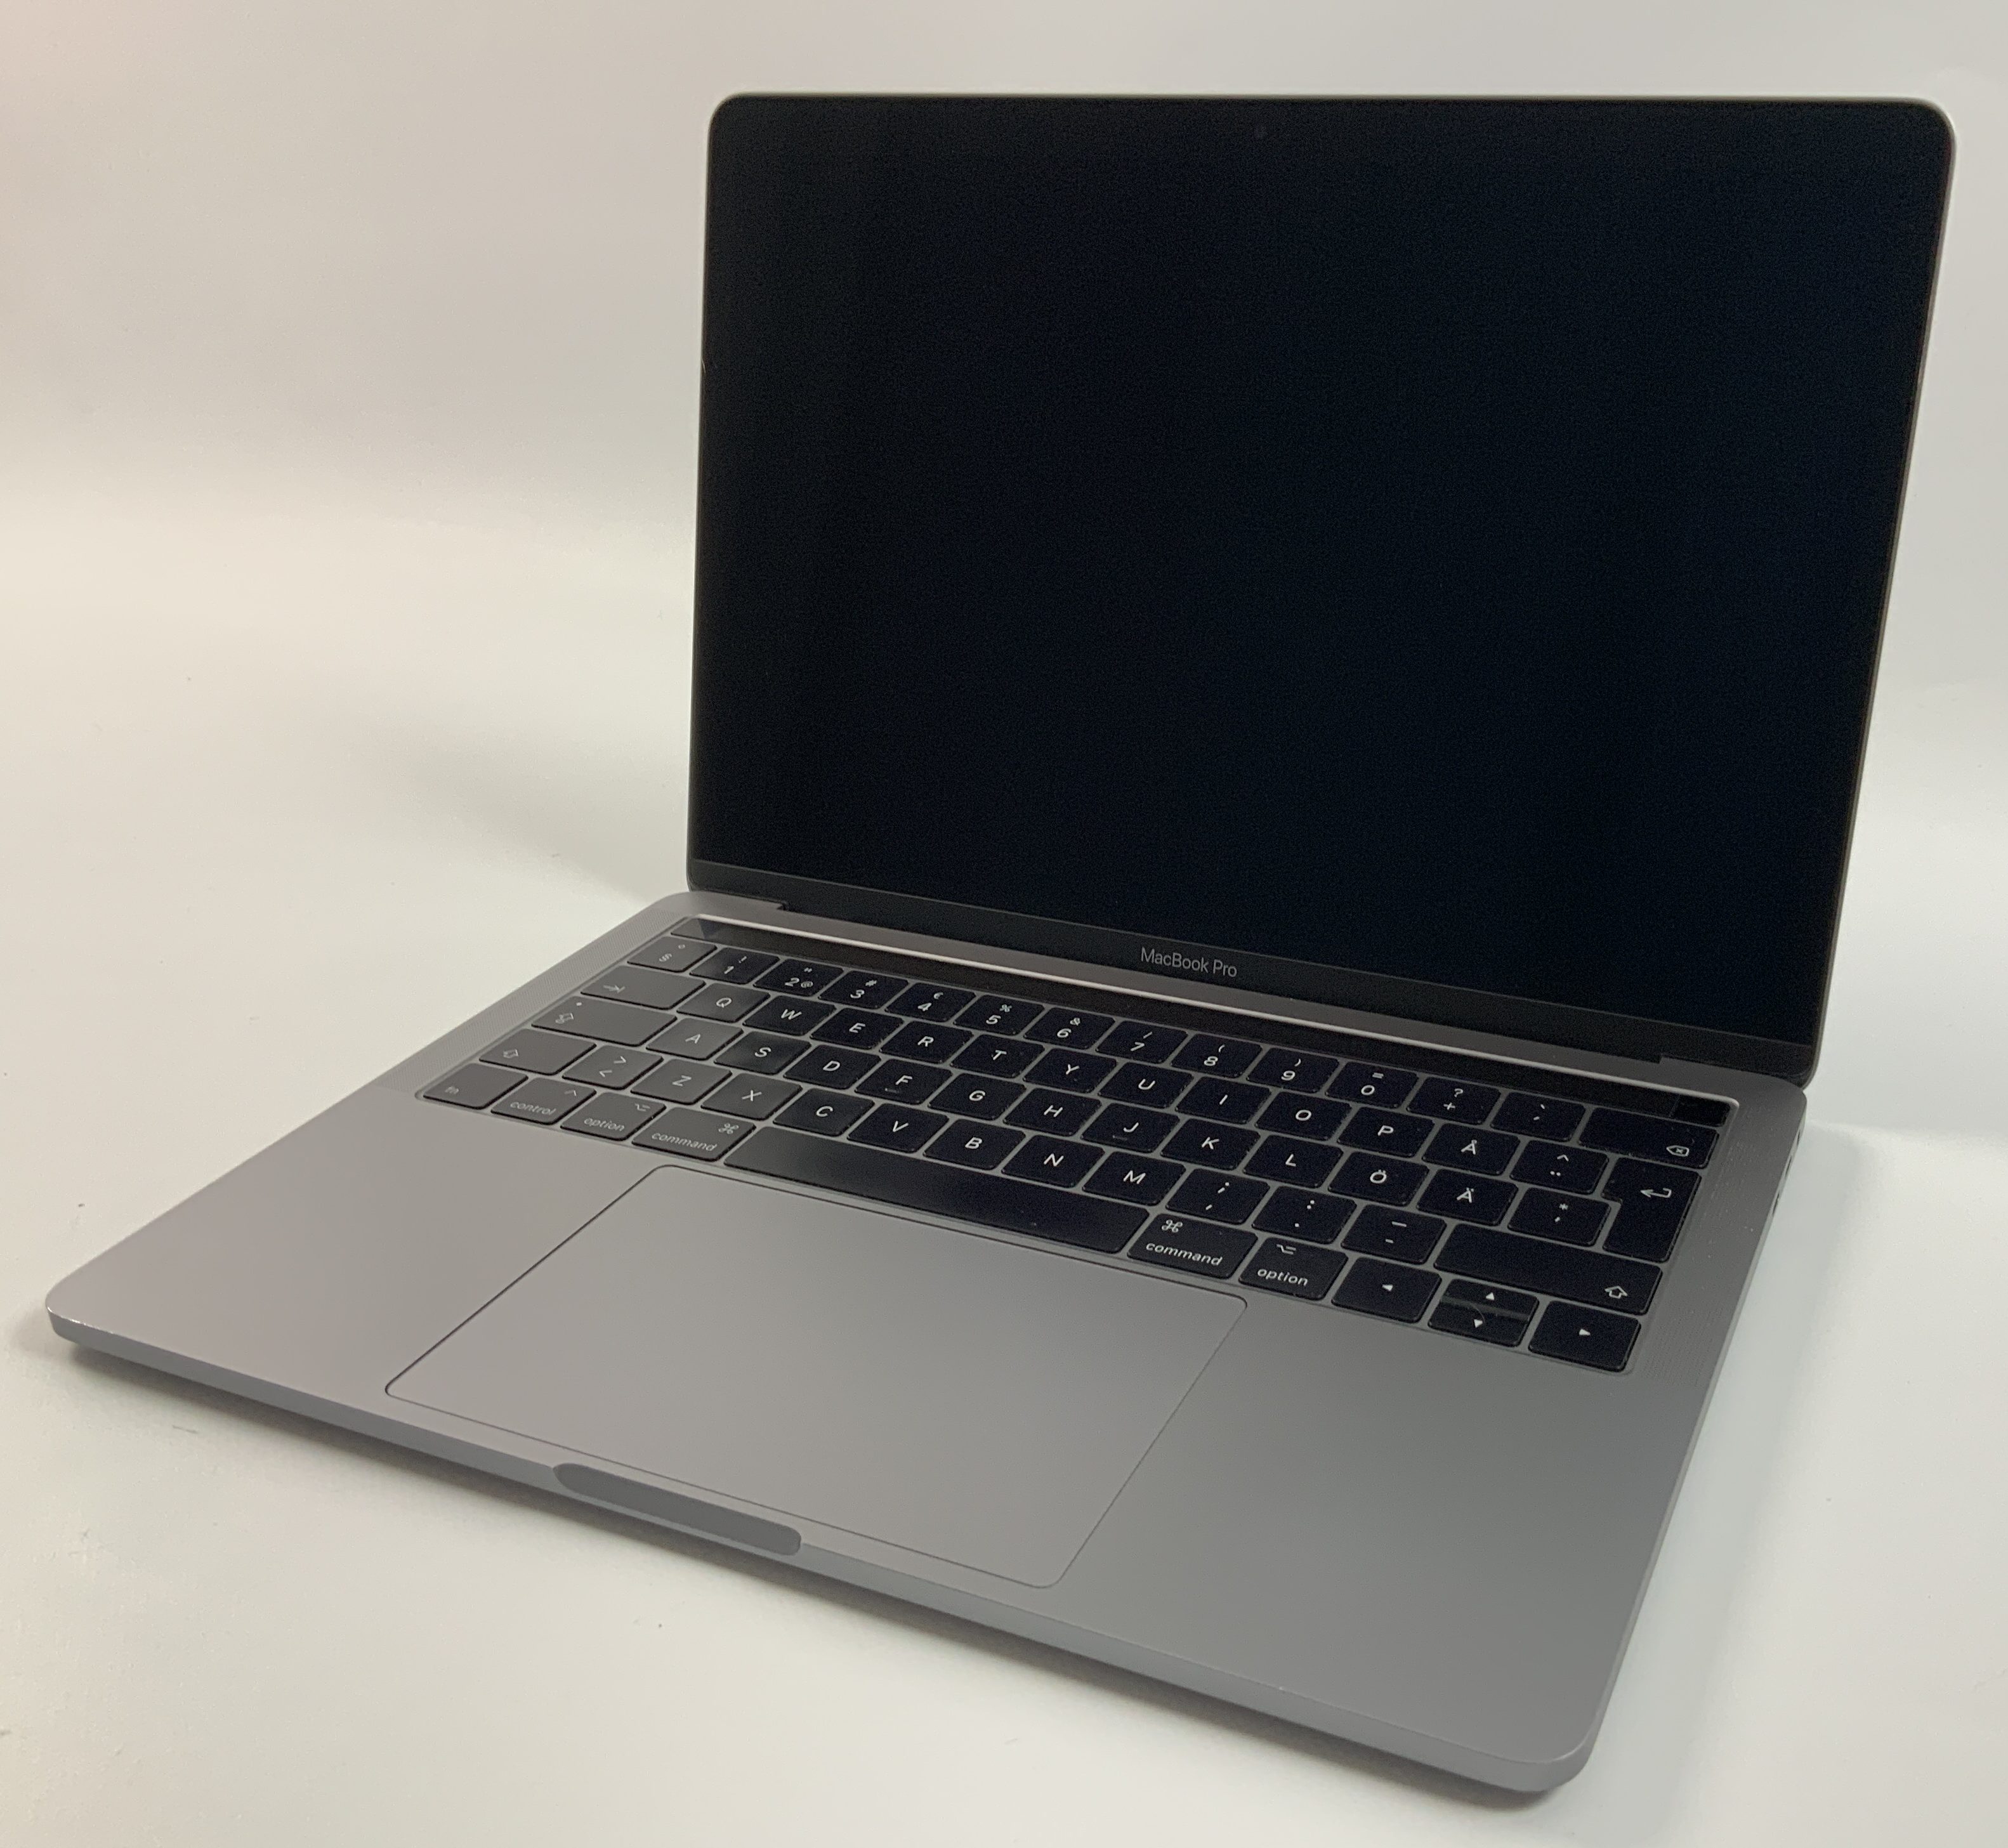 MacBook Pro 13" 4TBT Mid 2017 (Intel Core i5 3.1 GHz 8 GB RAM 256 GB SSD), Space Gray, Intel Core i5 3.1 GHz, 8 GB RAM, 256 GB SSD, imagen 1